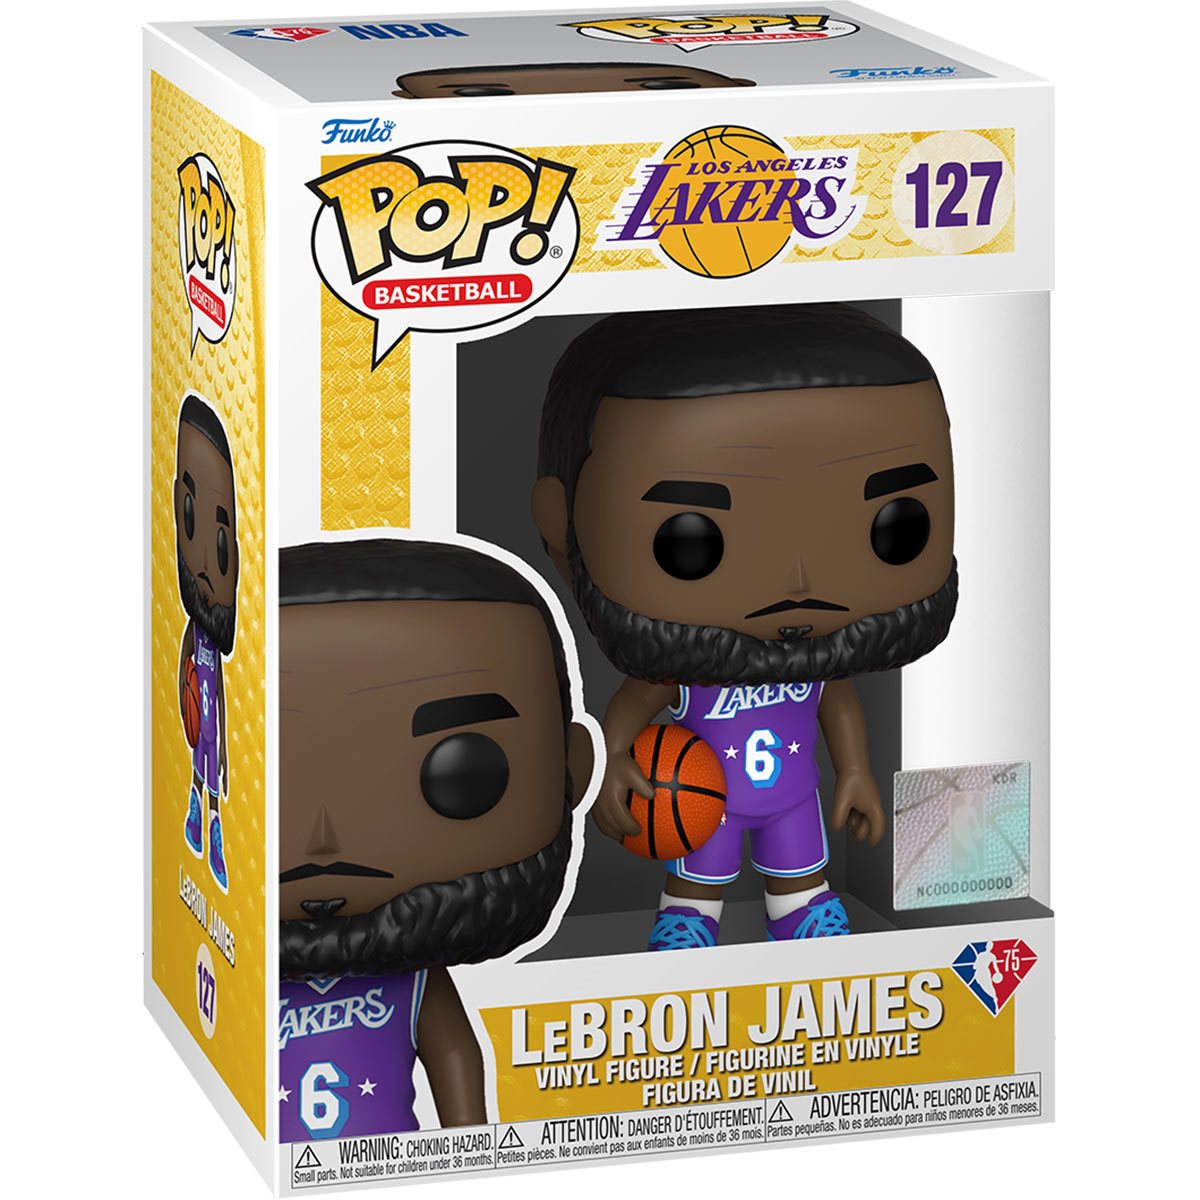 Funko Pop NBA: Lakers - LeBron James Playoffs 21